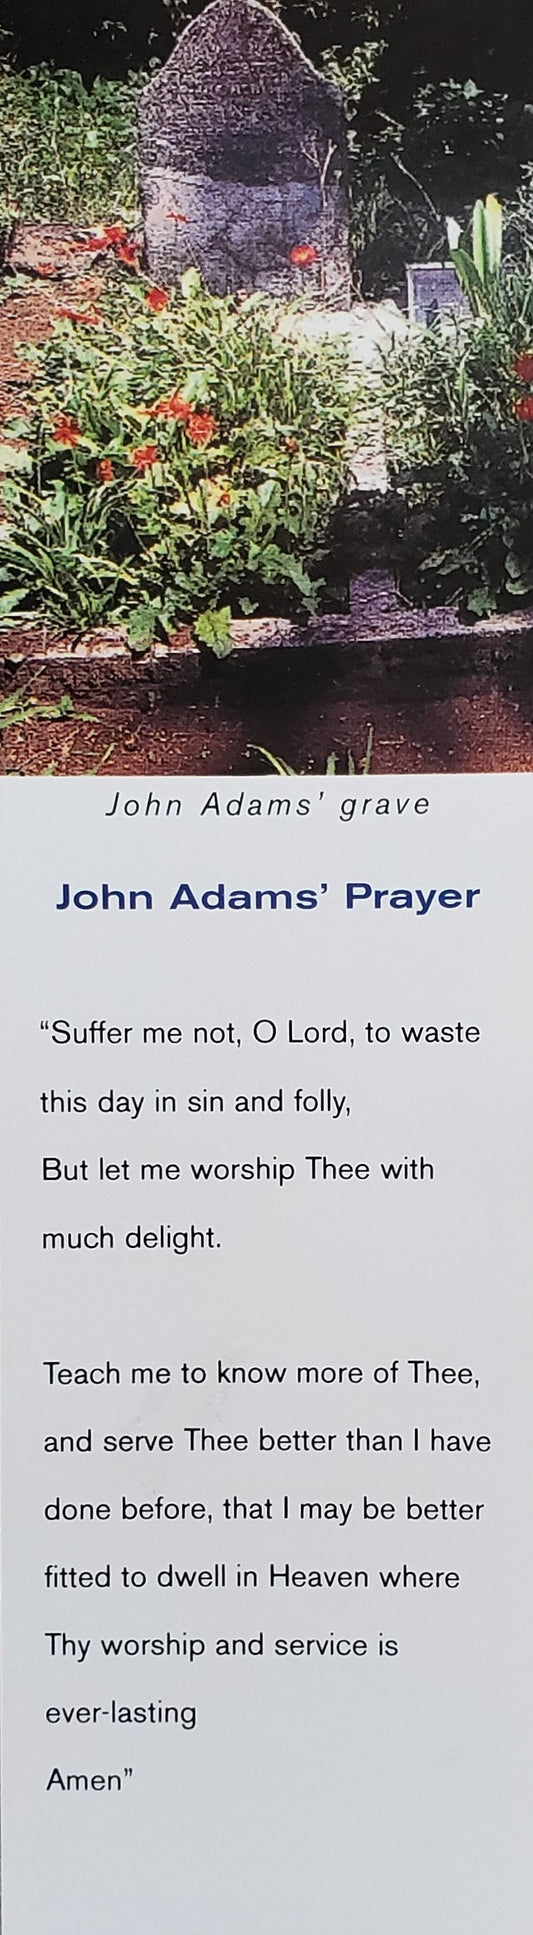 Lesezeichen - John Adams Grave, Karton